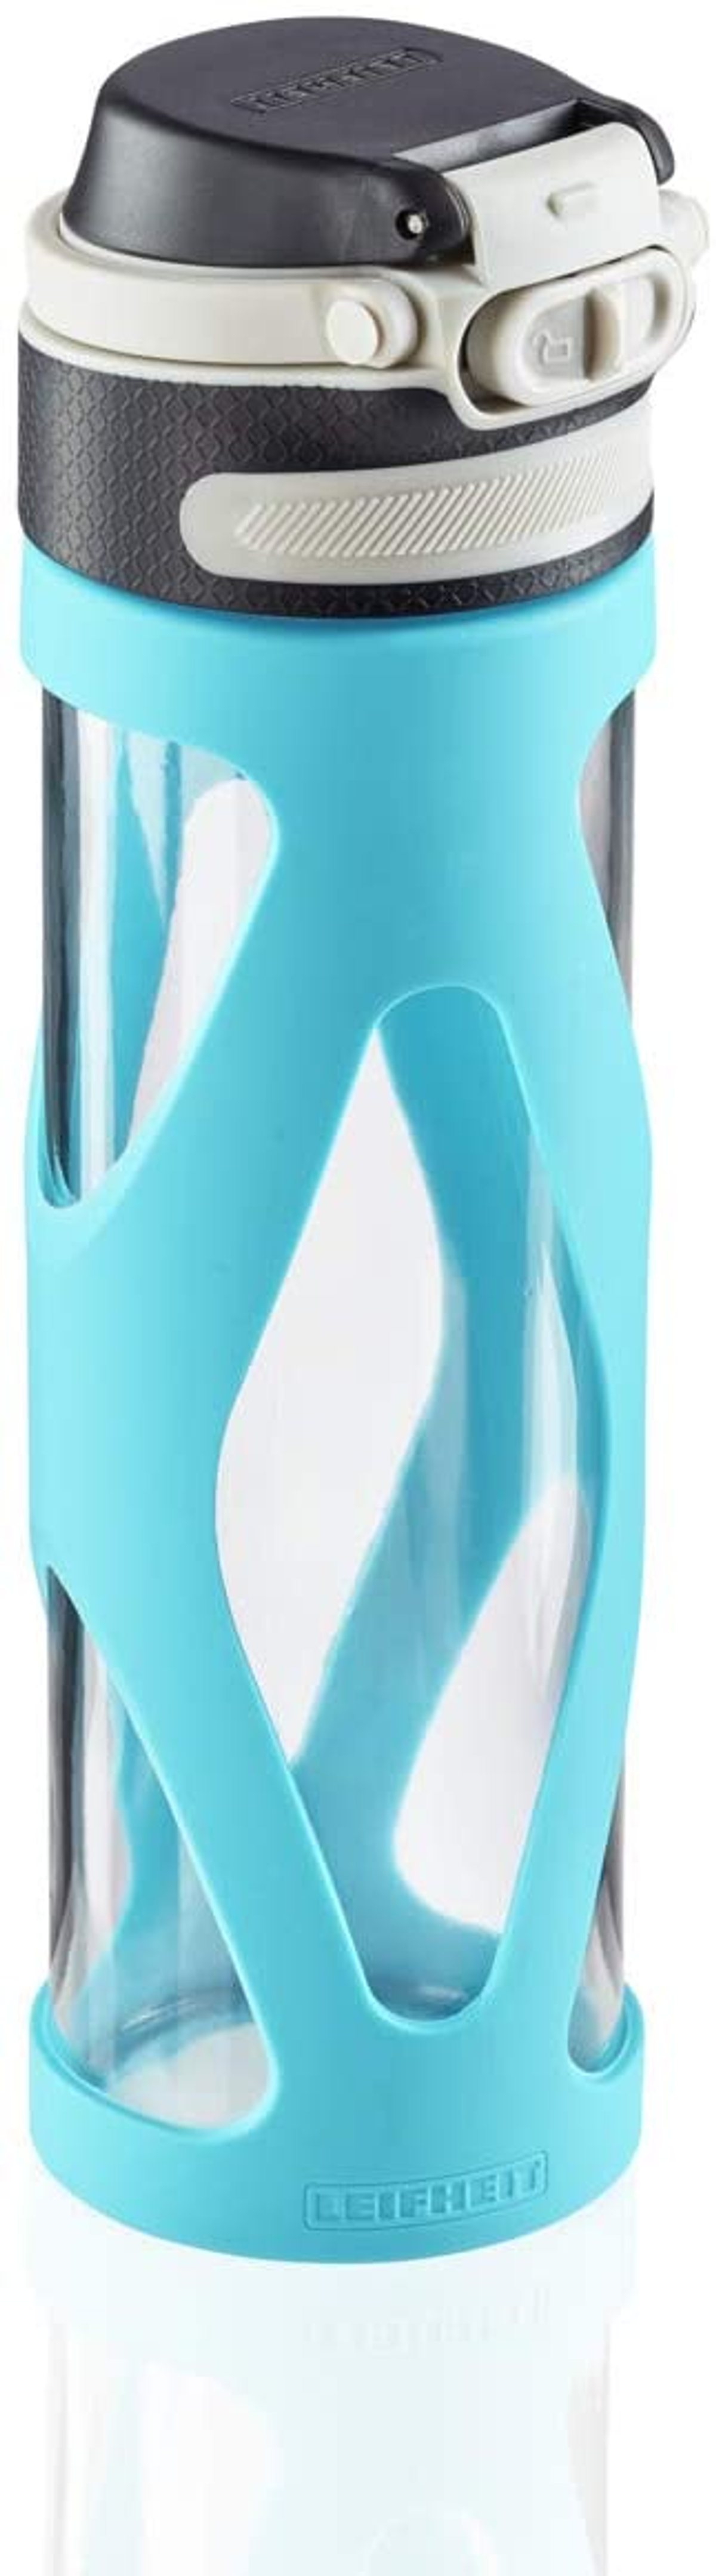 LEIFHEIT 3259 TRINKFLASCHE Wasserblau GLAS FLIP Trinkflasche 600ML WASSERBLAU